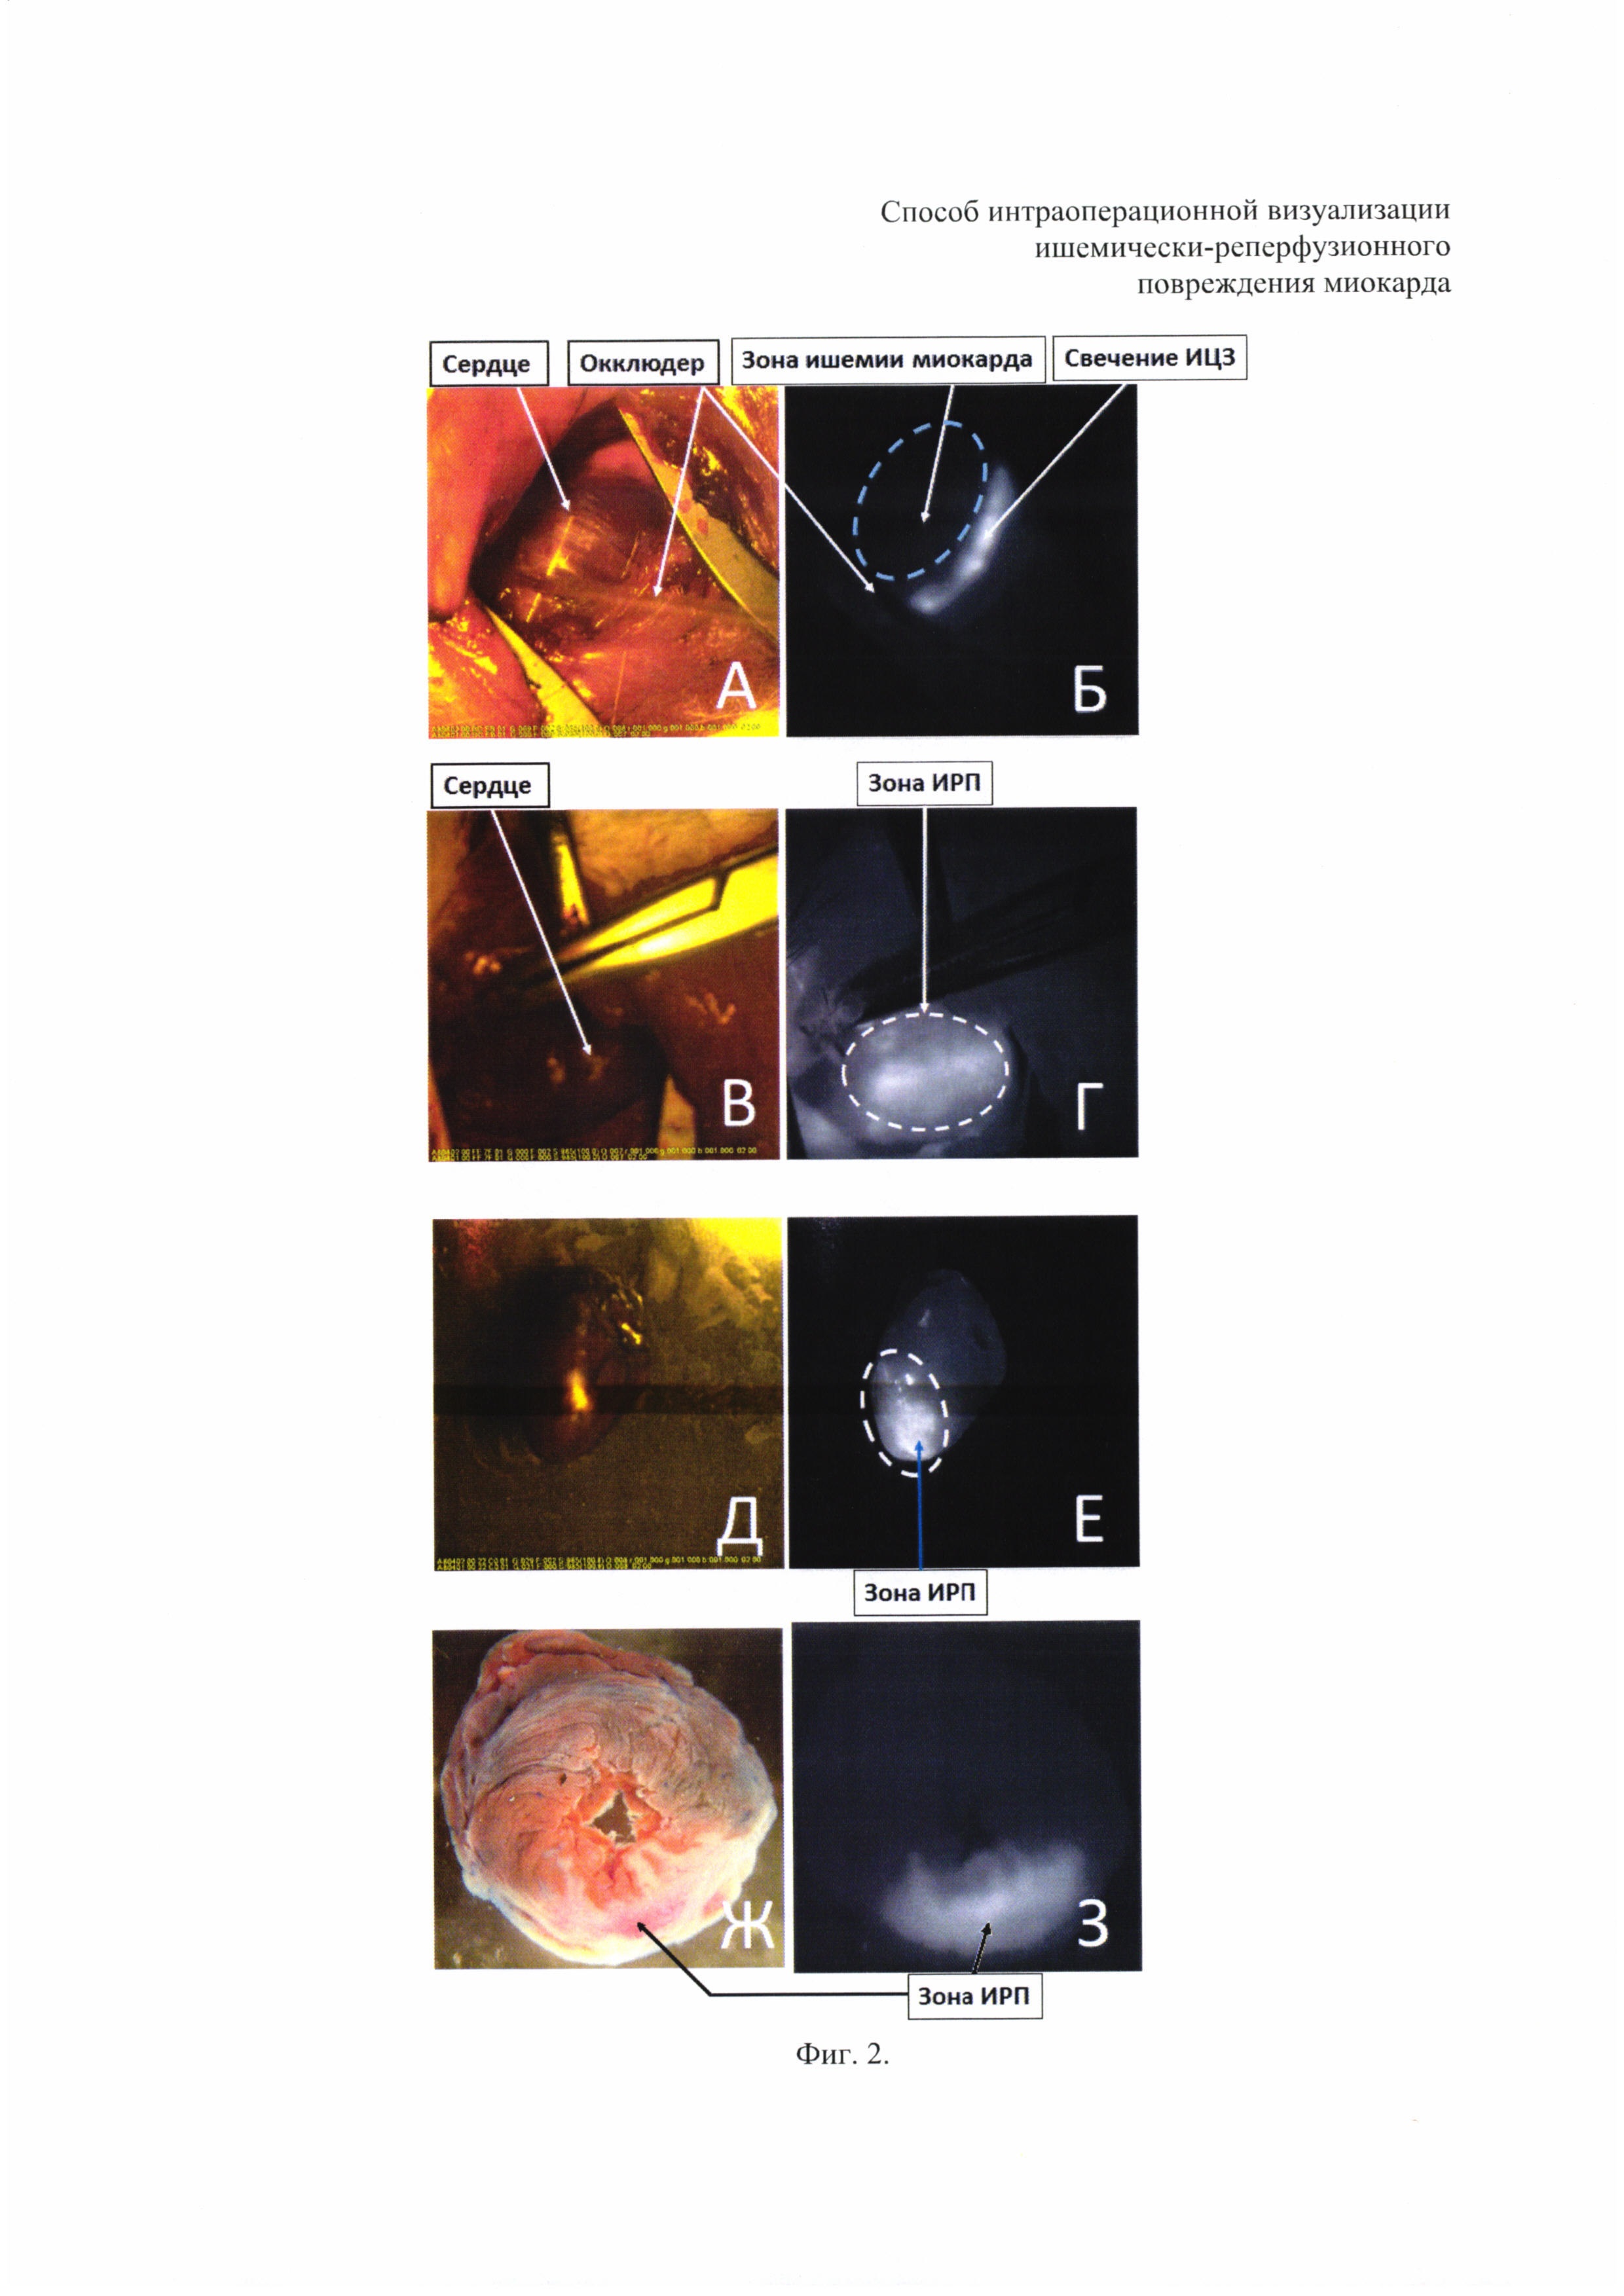 Способ интраоперационной визуализации ишемически-реперфузионного повреждения миокарда